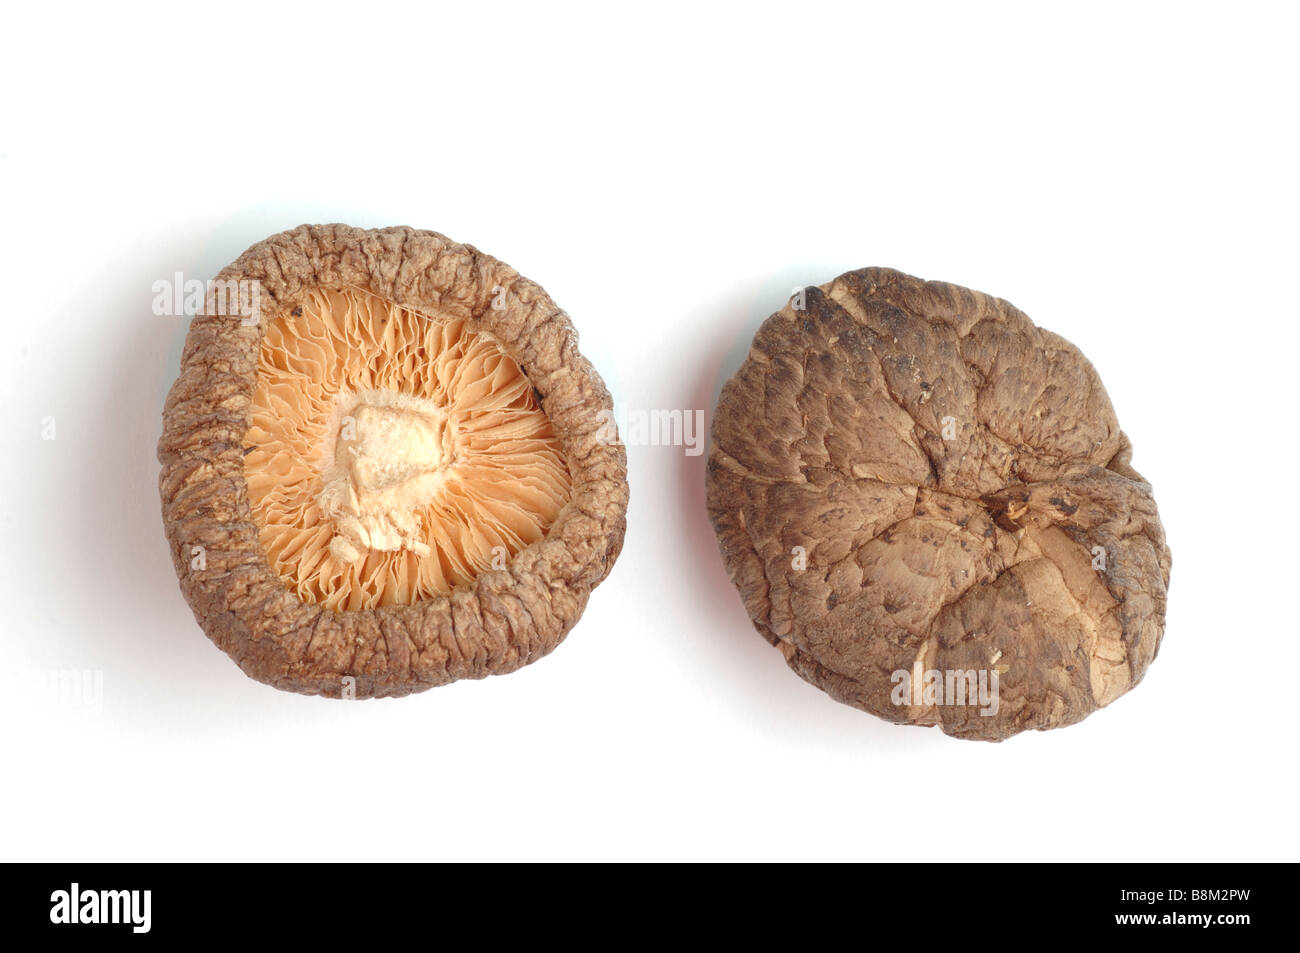 Le shiitake Lentinula edodes est un champignon comestible originaire d'Asie utilisée comme plante médicinale et alimentaire Banque D'Images